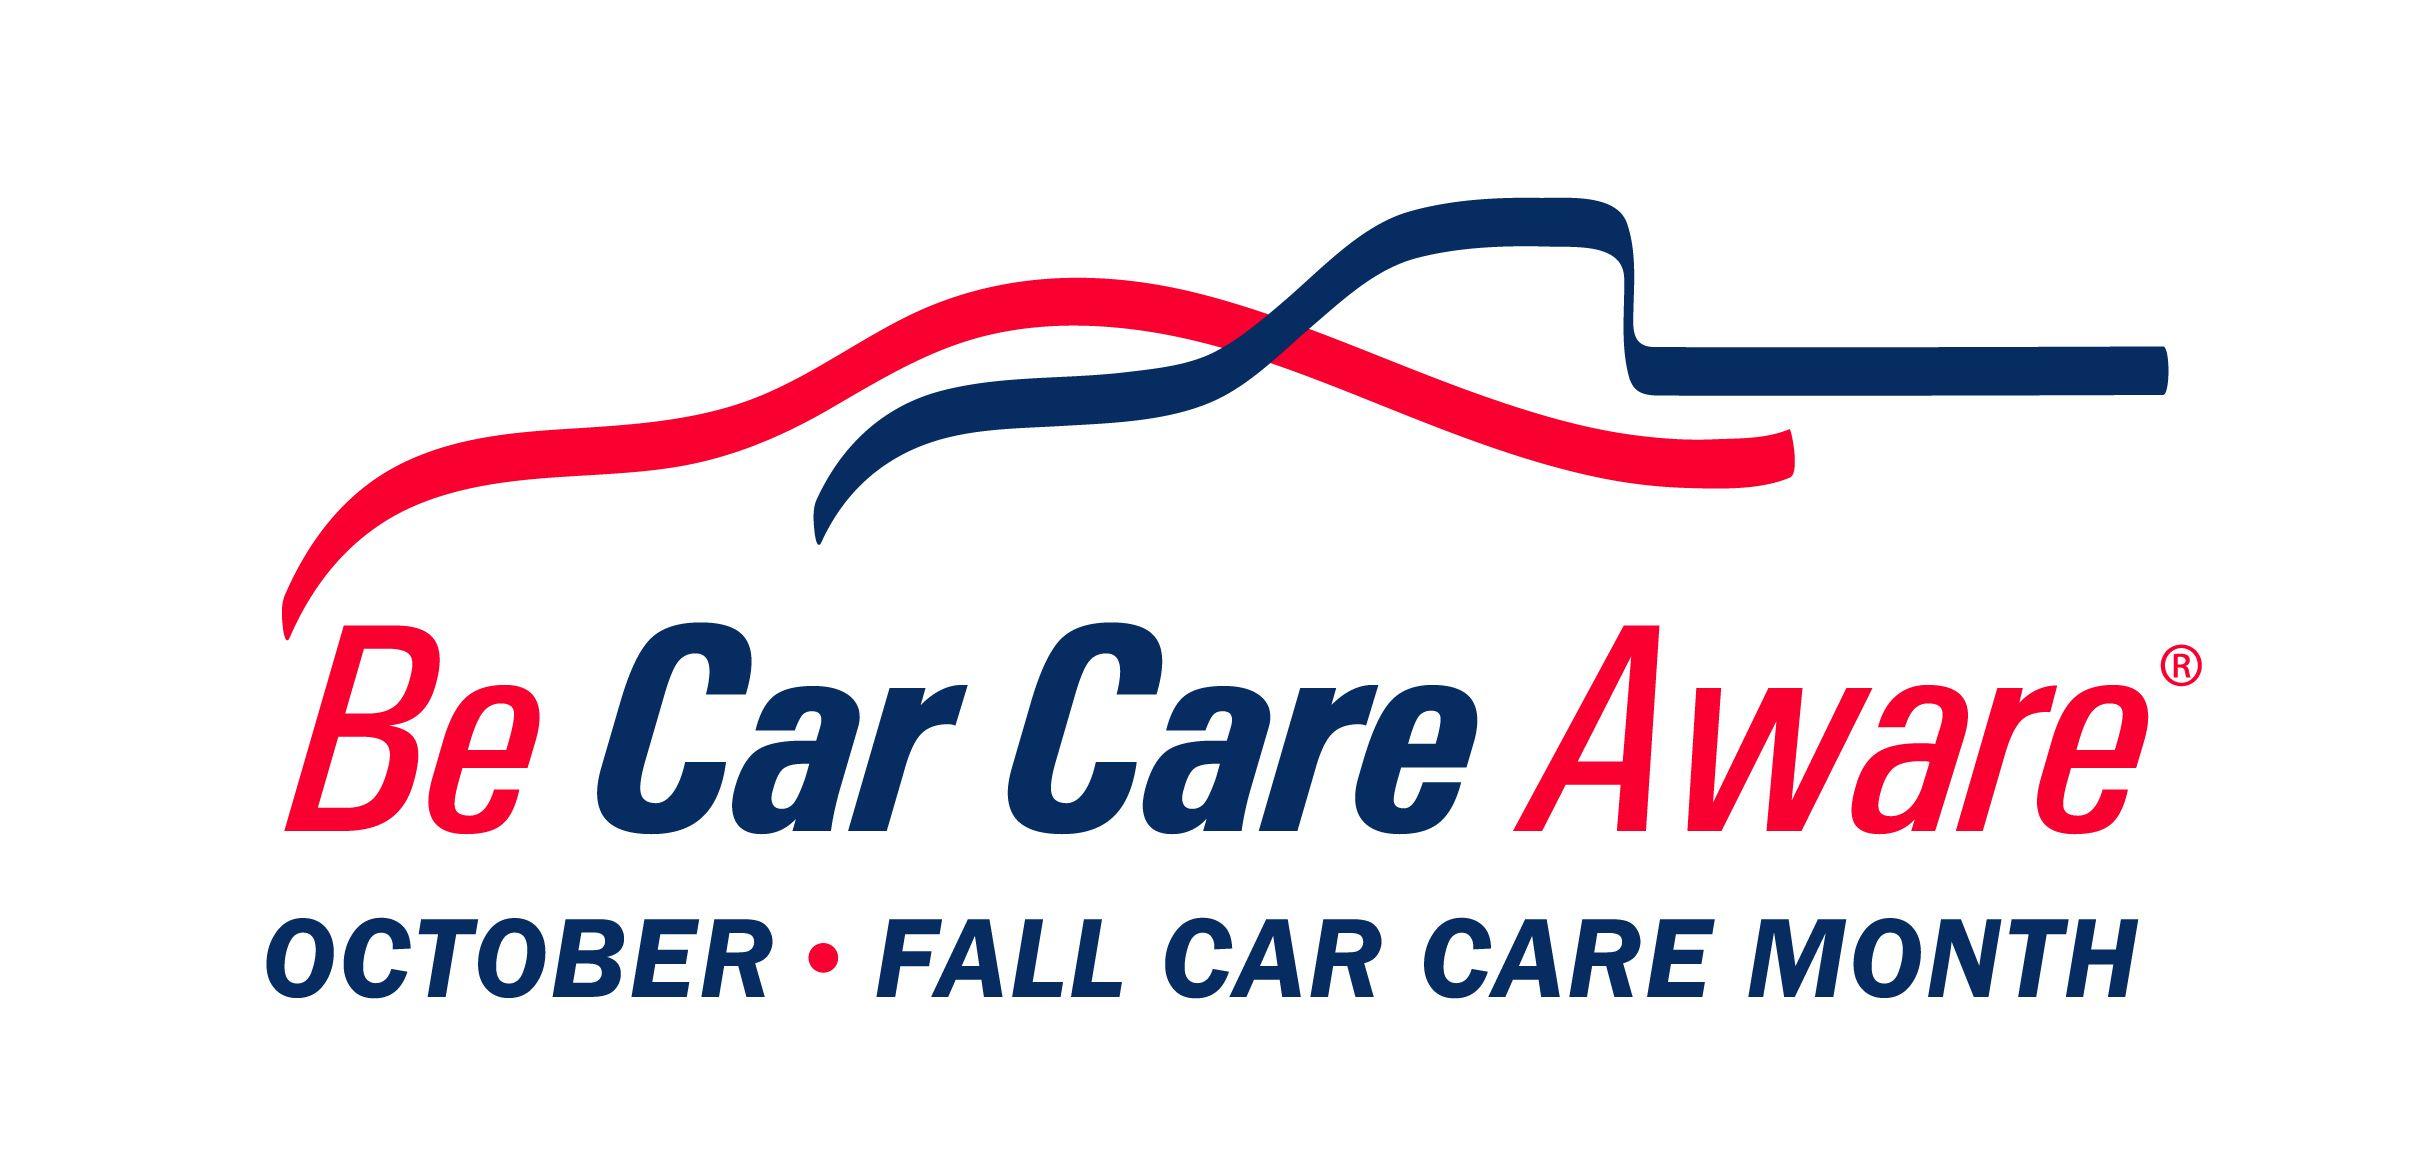 Auto Care Logo - Logos- Be Car Care Aware Logos